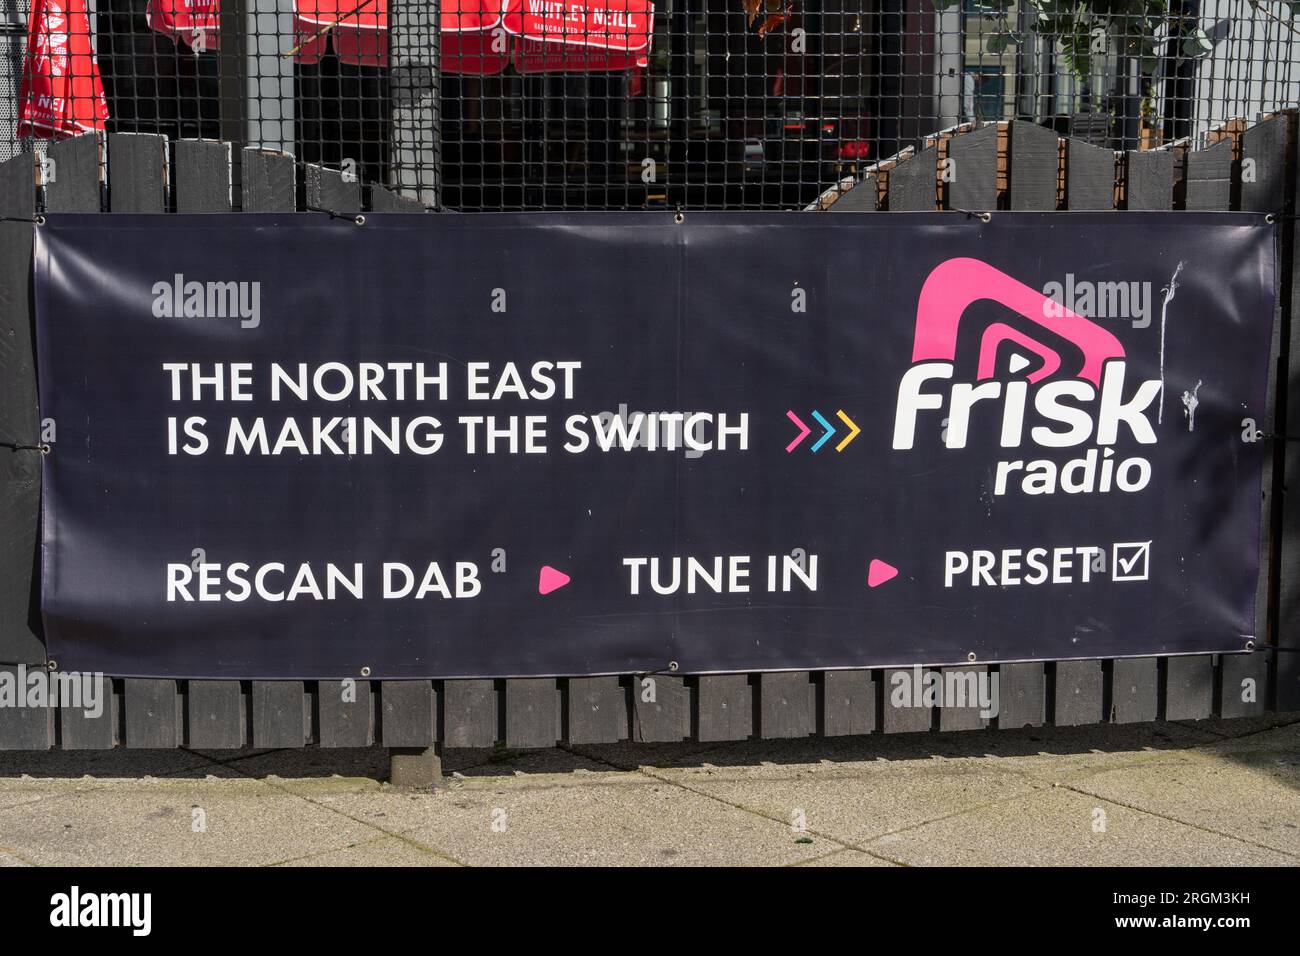 Panneau publicitaire pour Frisk radio - une station de radio DAB du Nord-est de l'Angleterre. Banque D'Images